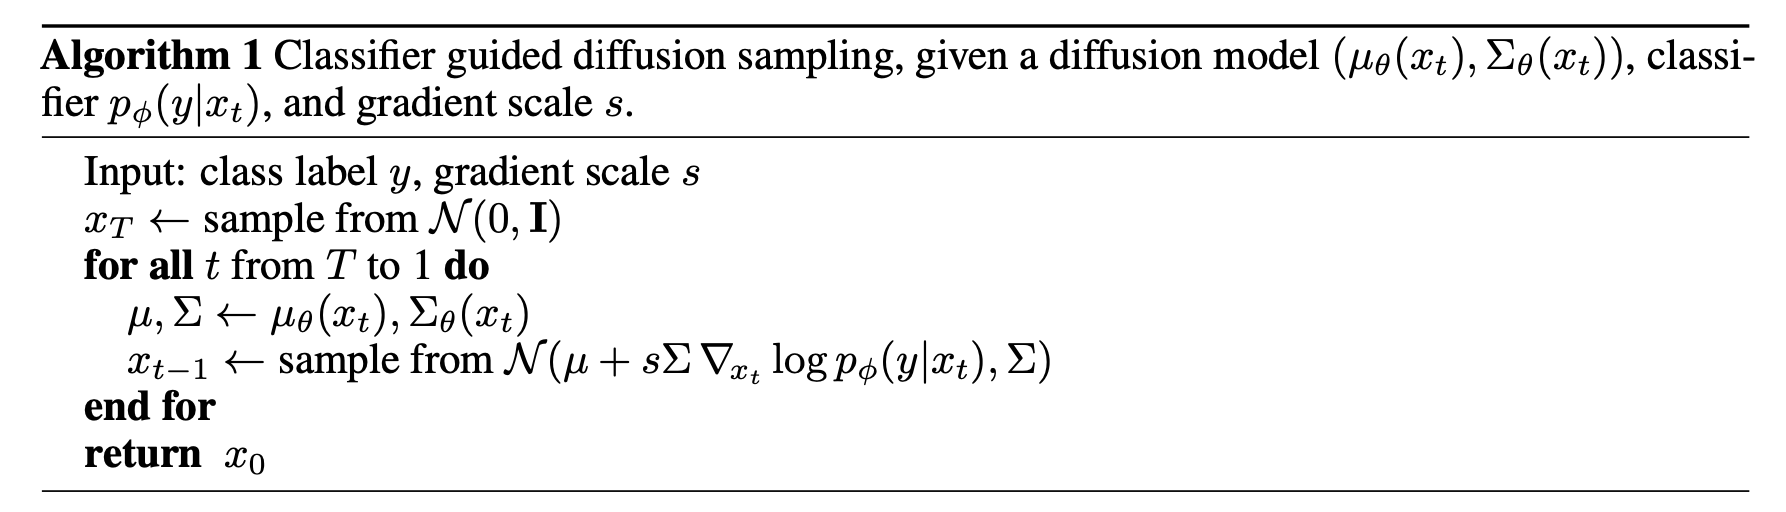 class_diffusion_algorithm1